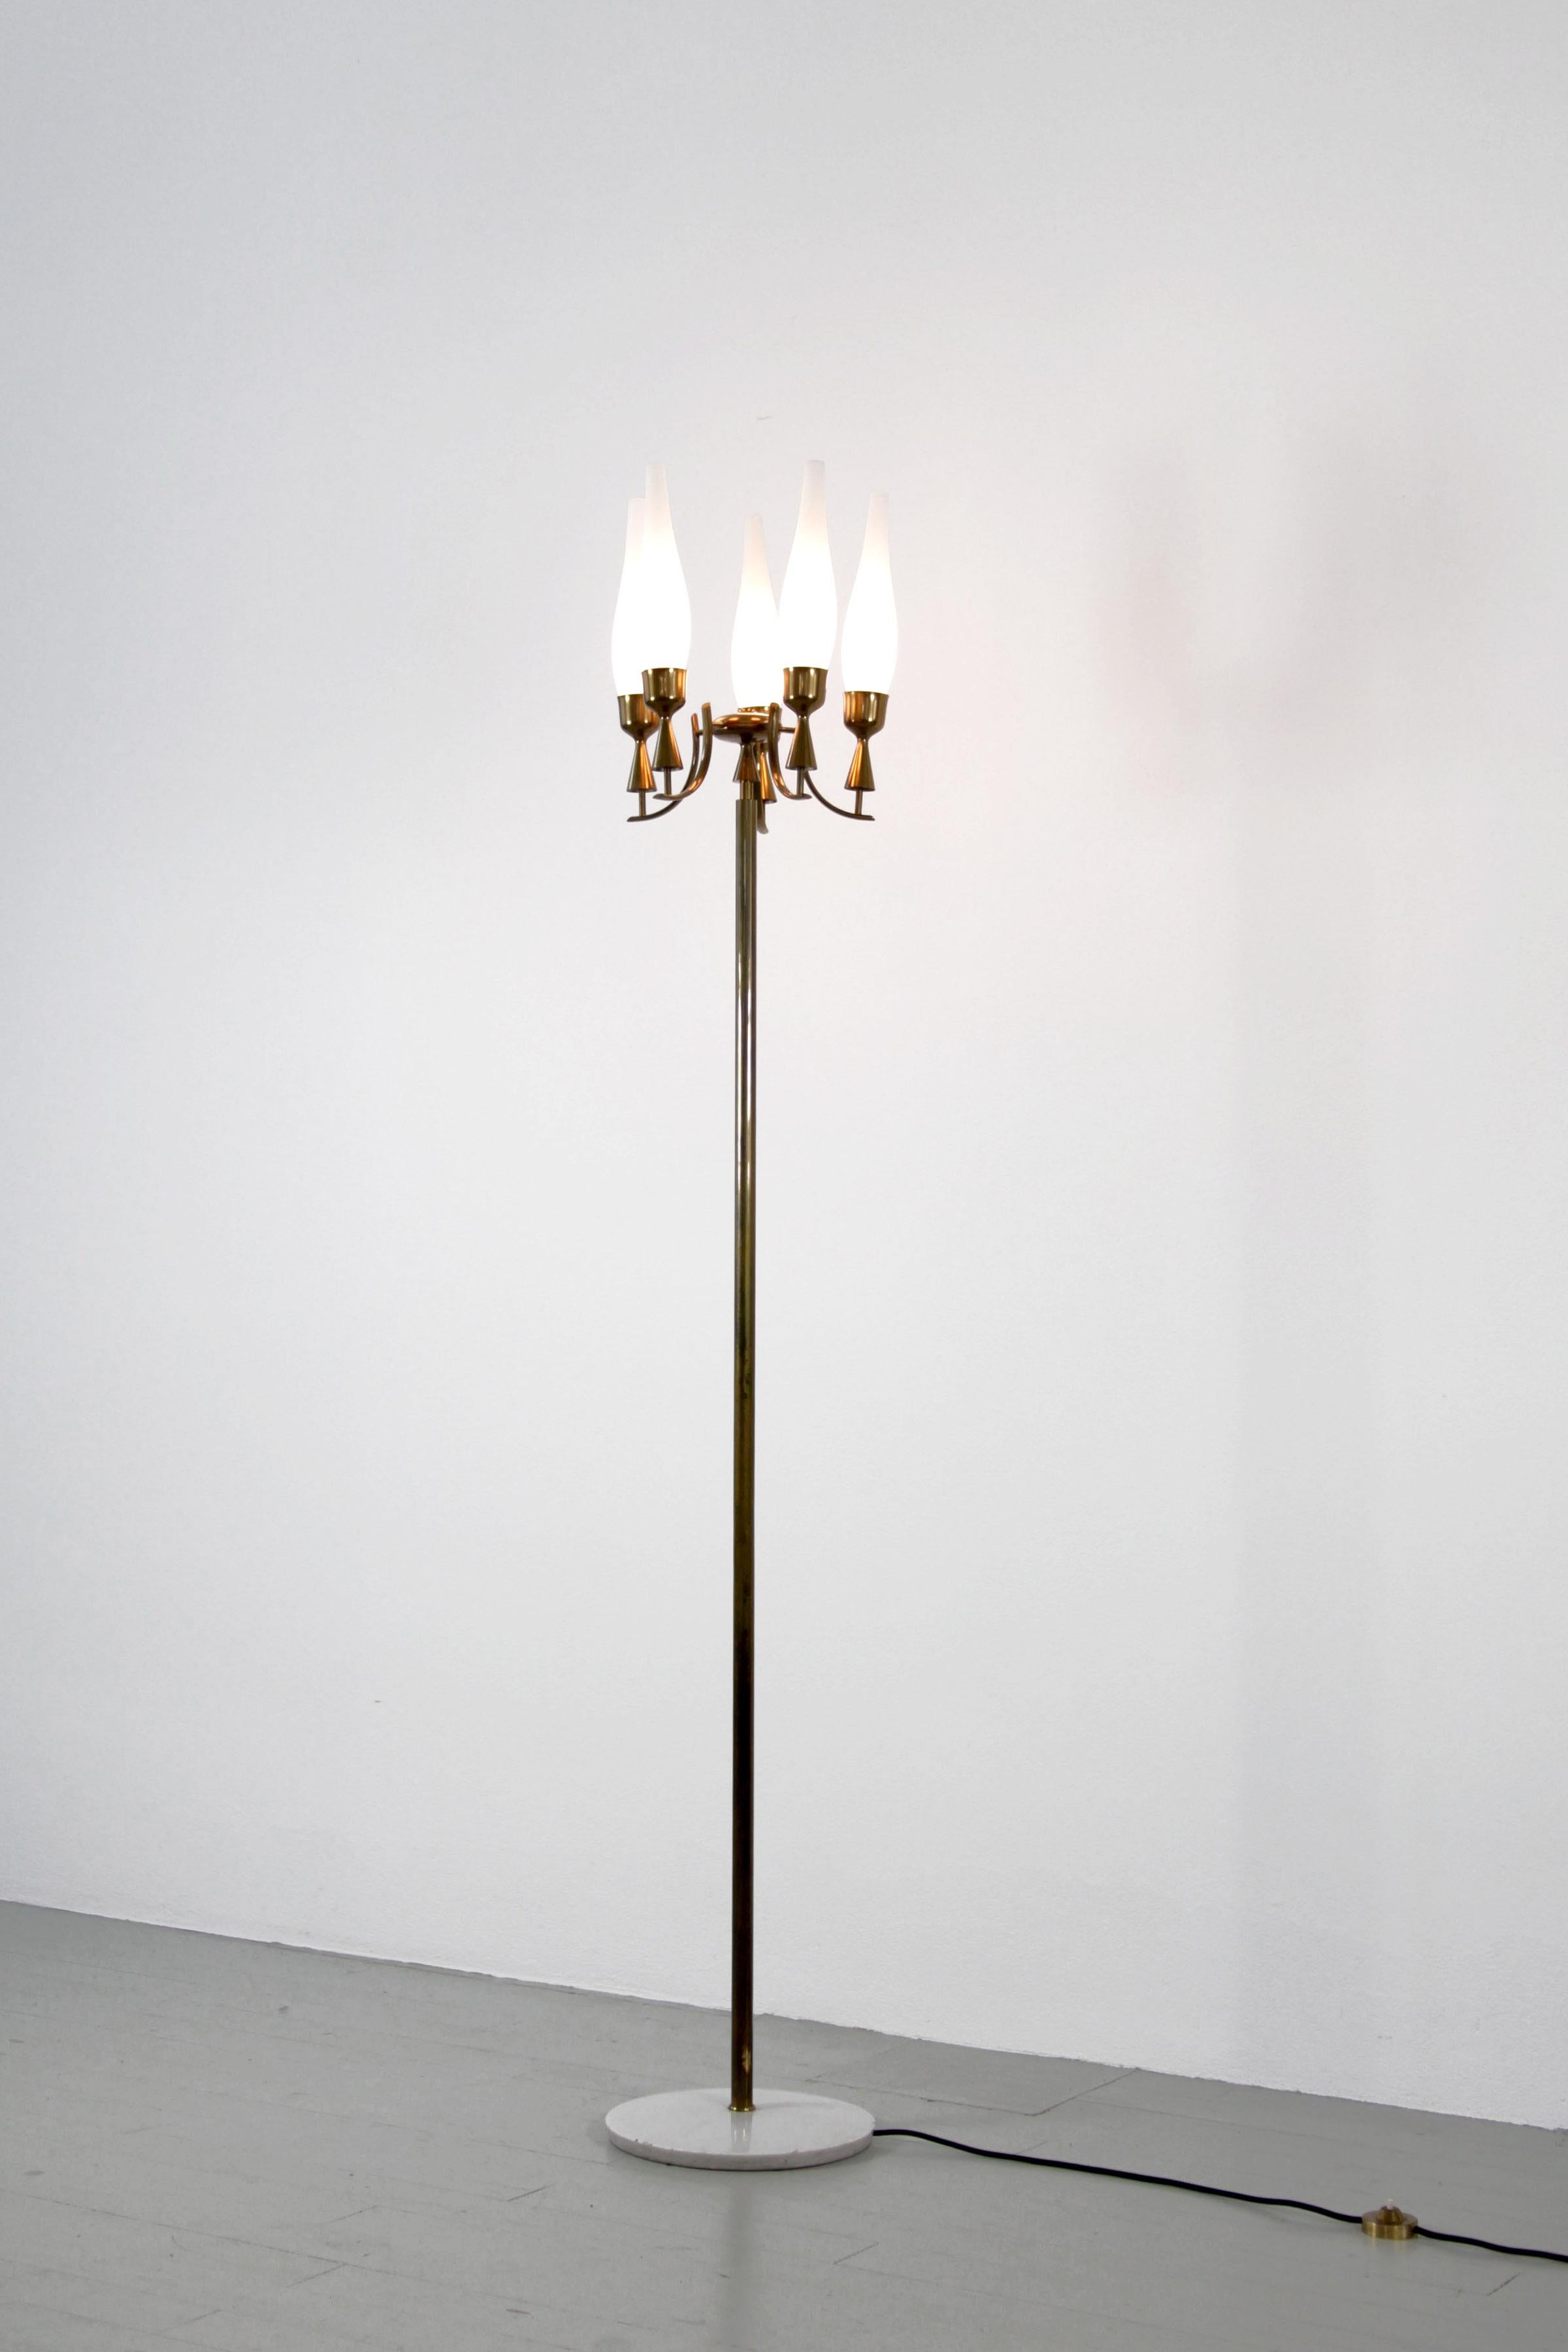 Lampadaire Angelo Lelli Modèle 12635 - Fabriqué par Arredoluce, Italie, années 1950. La lampe en laiton a une base en marbre et des abat-jours en verre satiné. L'interrupteur du lampadaire porte la gravure 